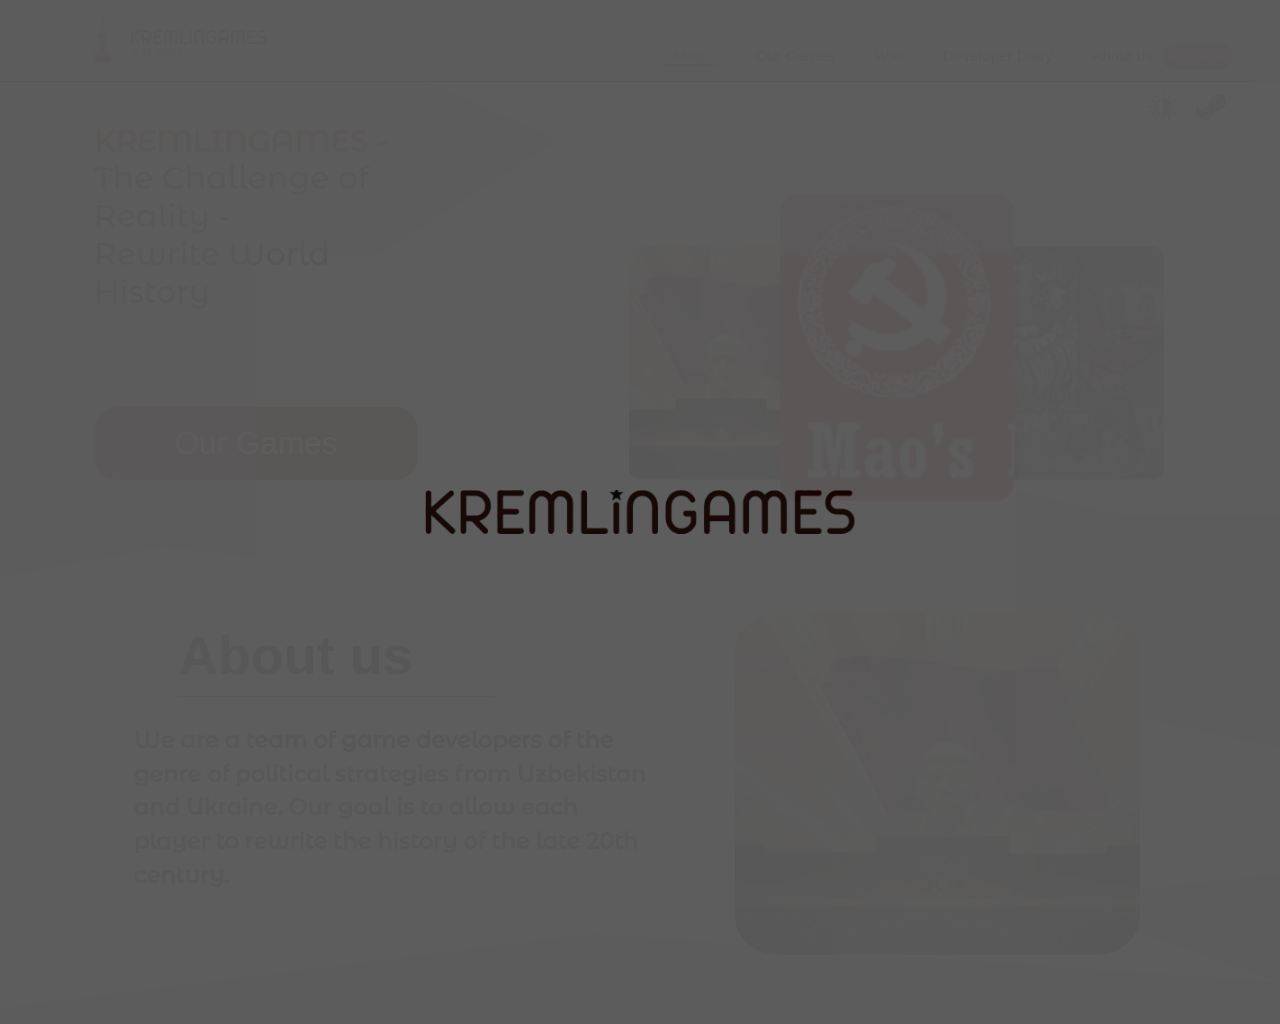 kremlingames.com